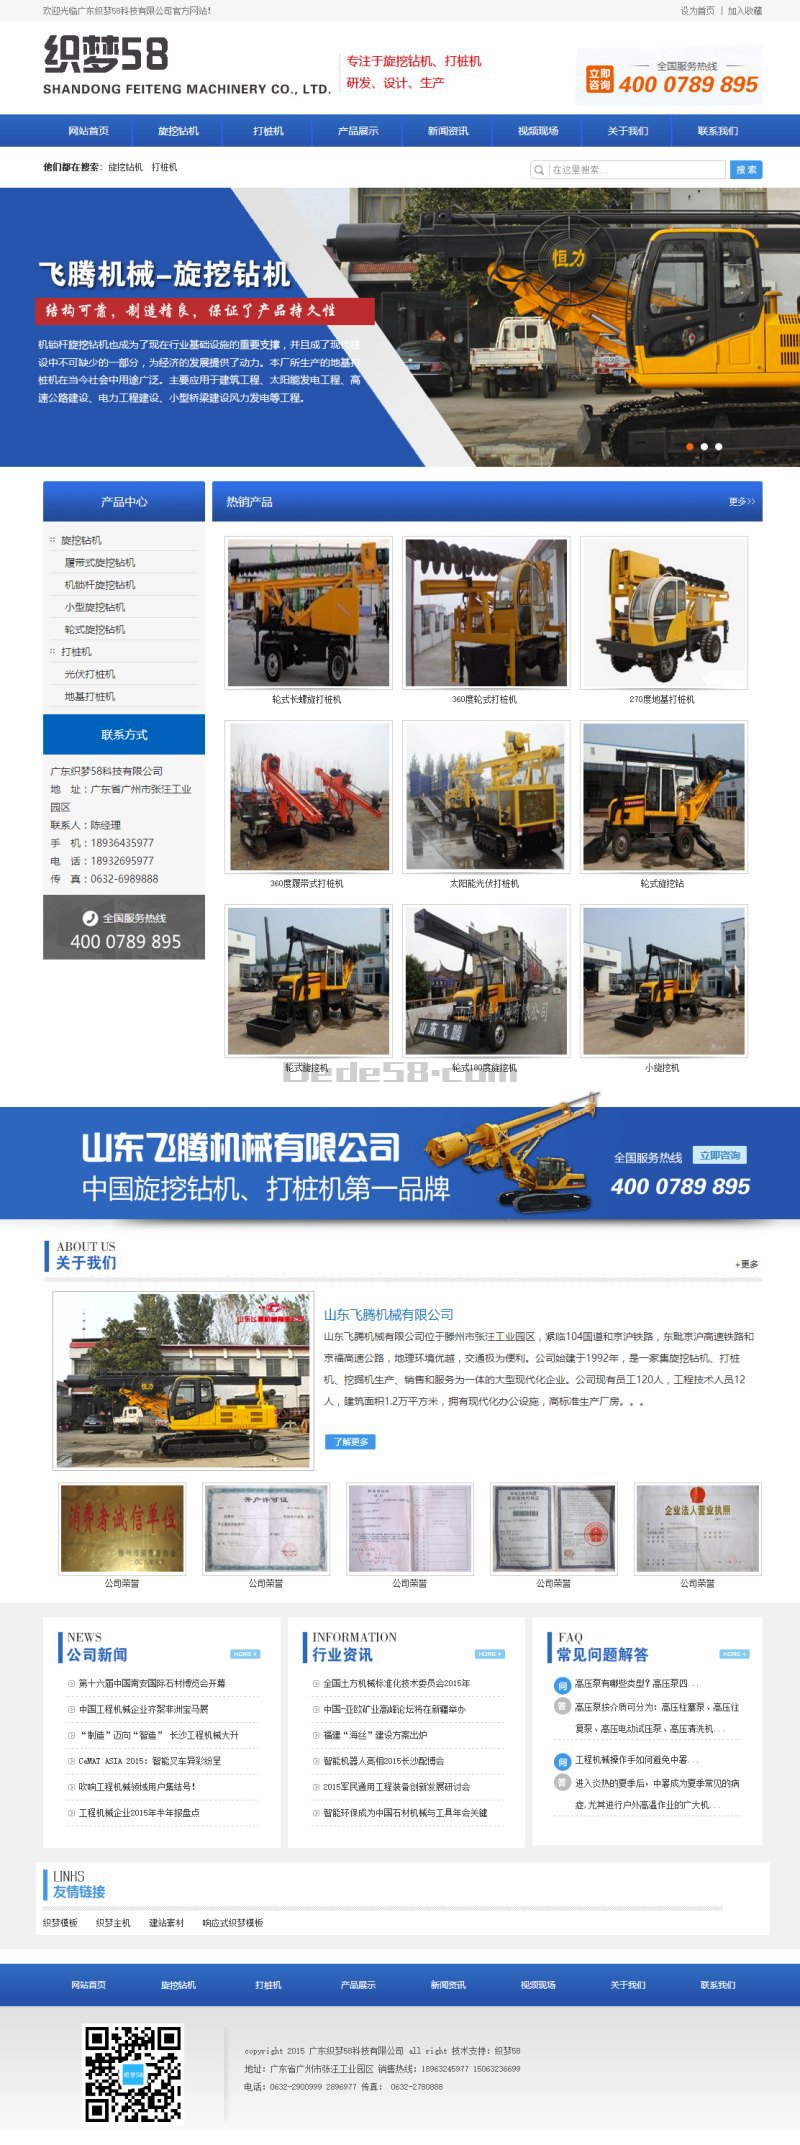 蓝色机械挖掘机钻机类产品企业网站织梦模板 第1张